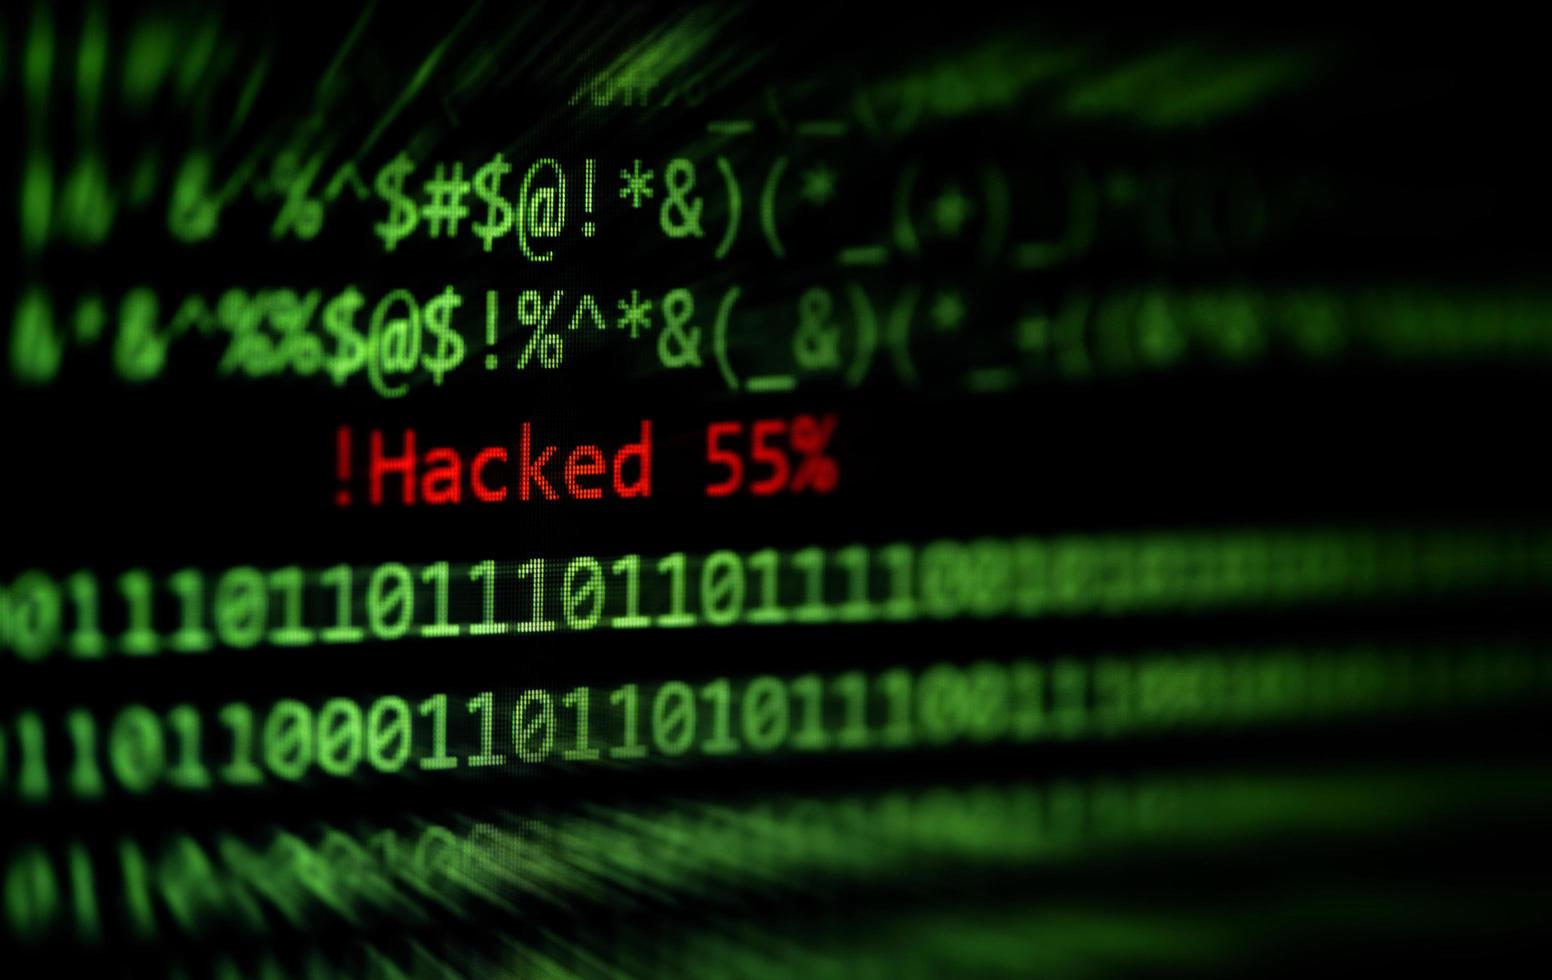 actividad de Internet de los delincuentes o concepto de piratería de seguridad de ladrones cibernéticos foto